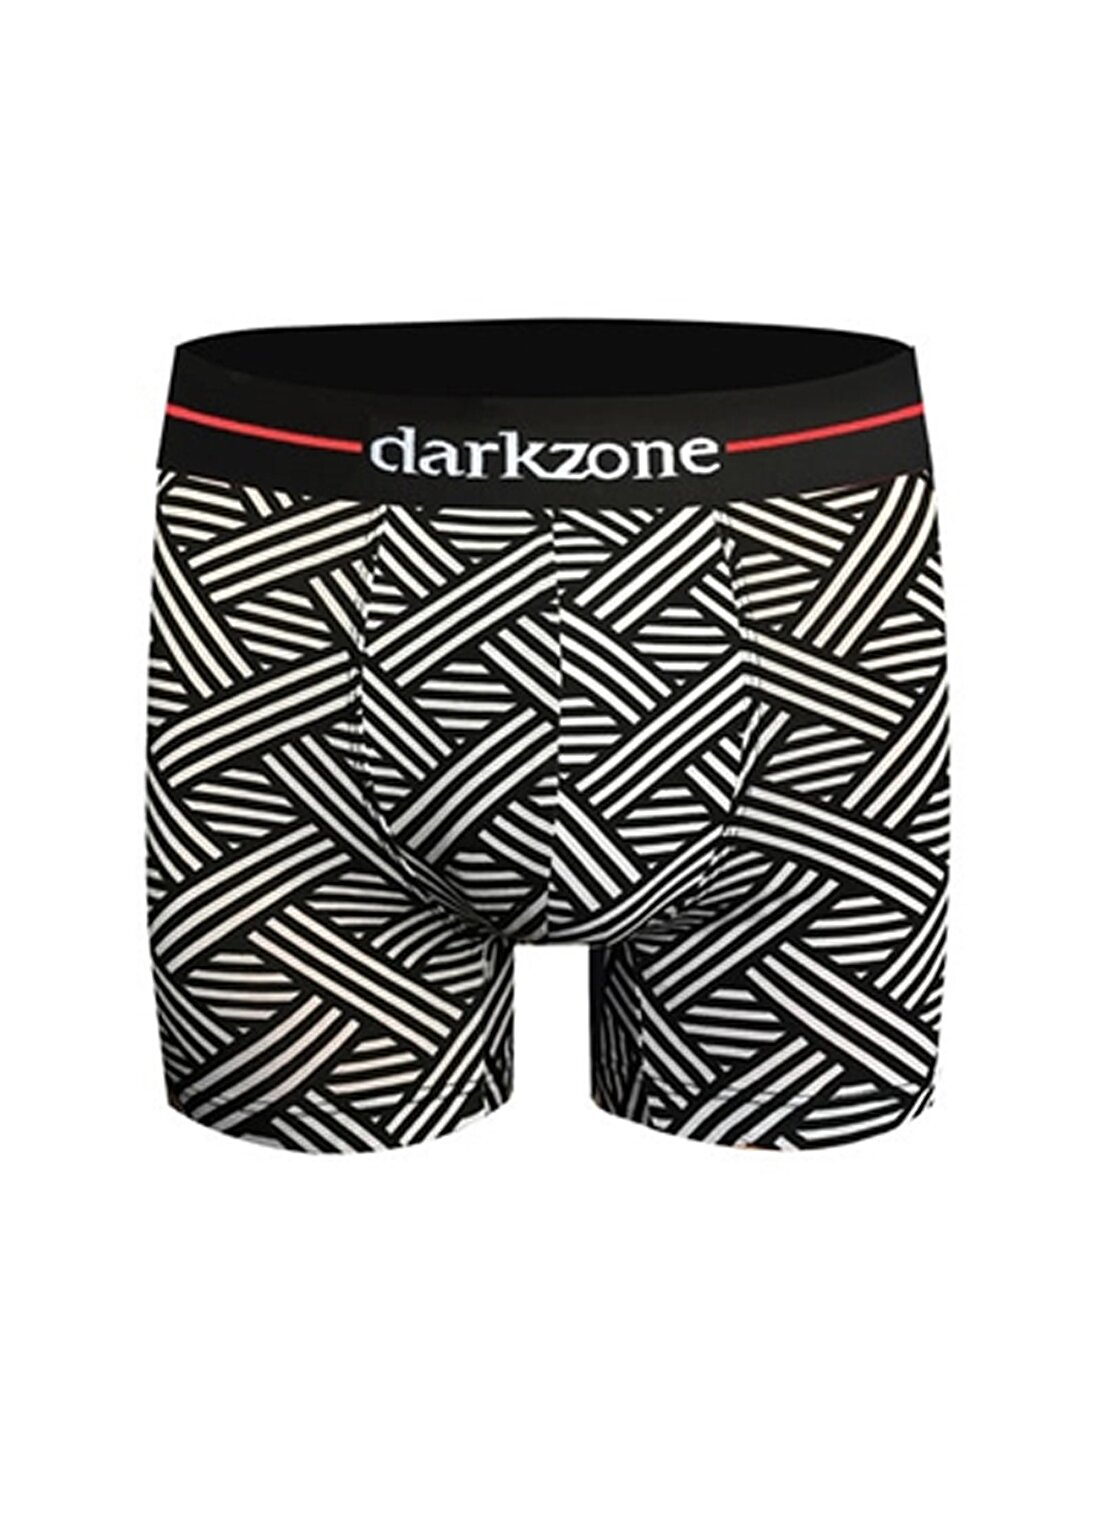 Darkzone Siyah-Beyaz Çizgi Desenli Erkek Boxer